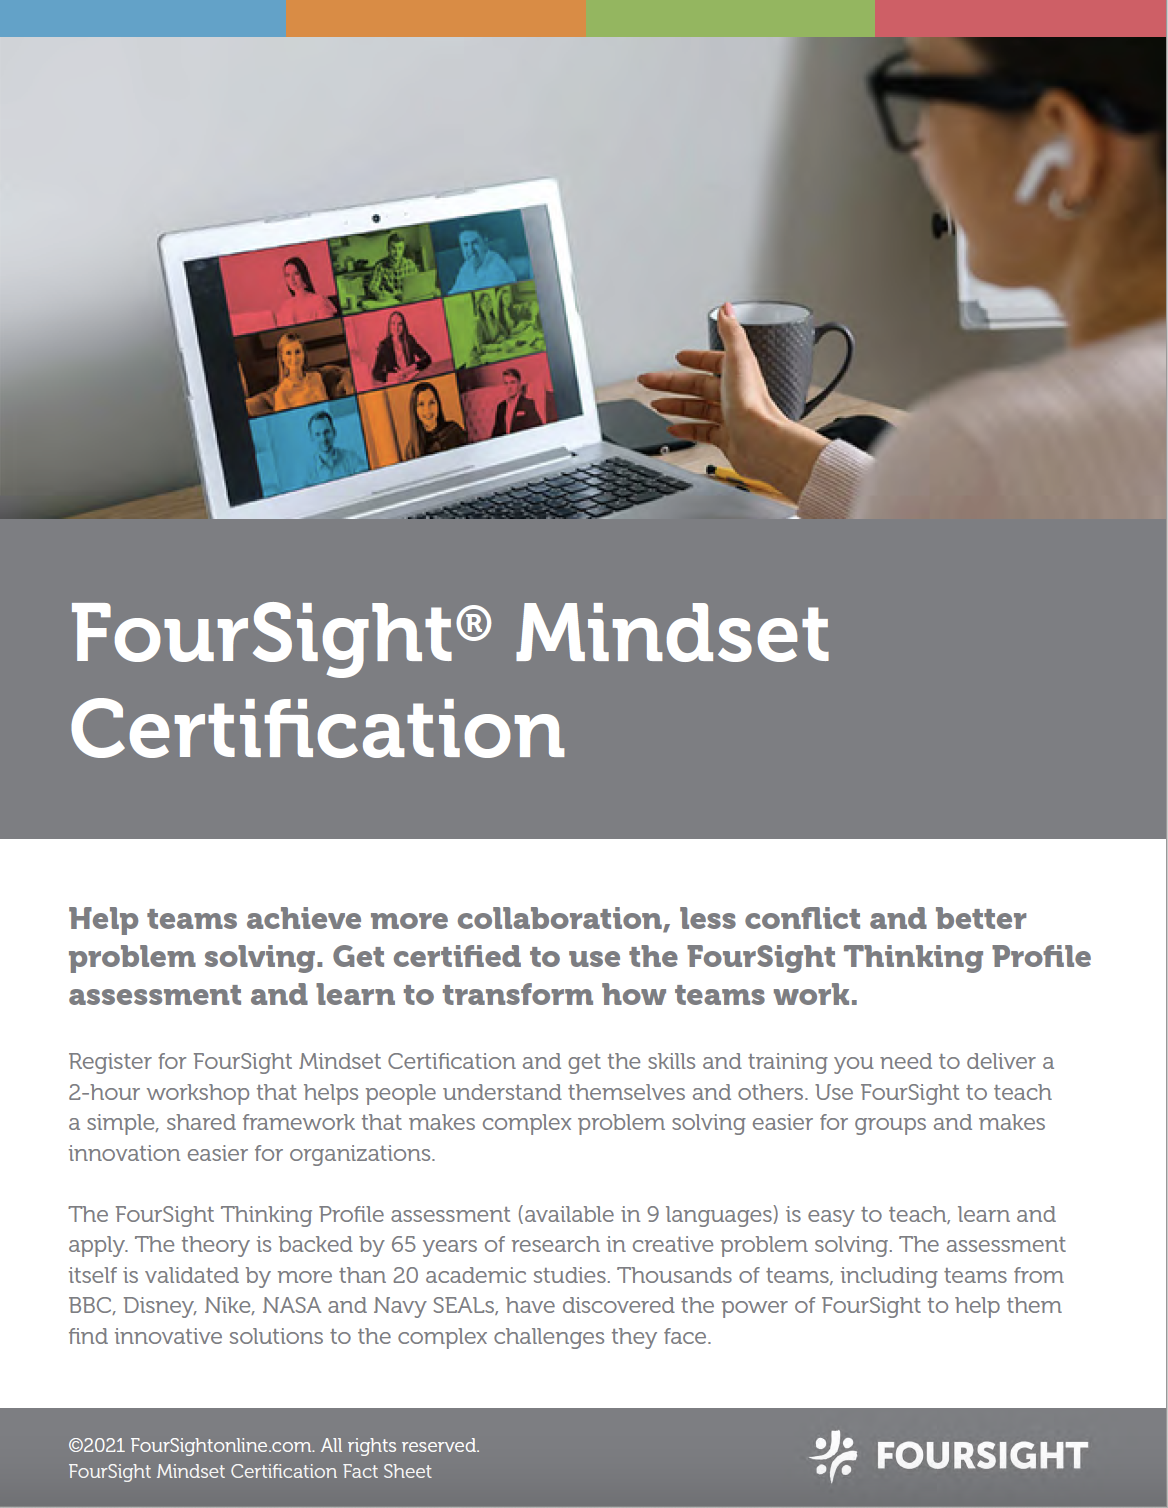 foursight-mindset-certification-guide-image